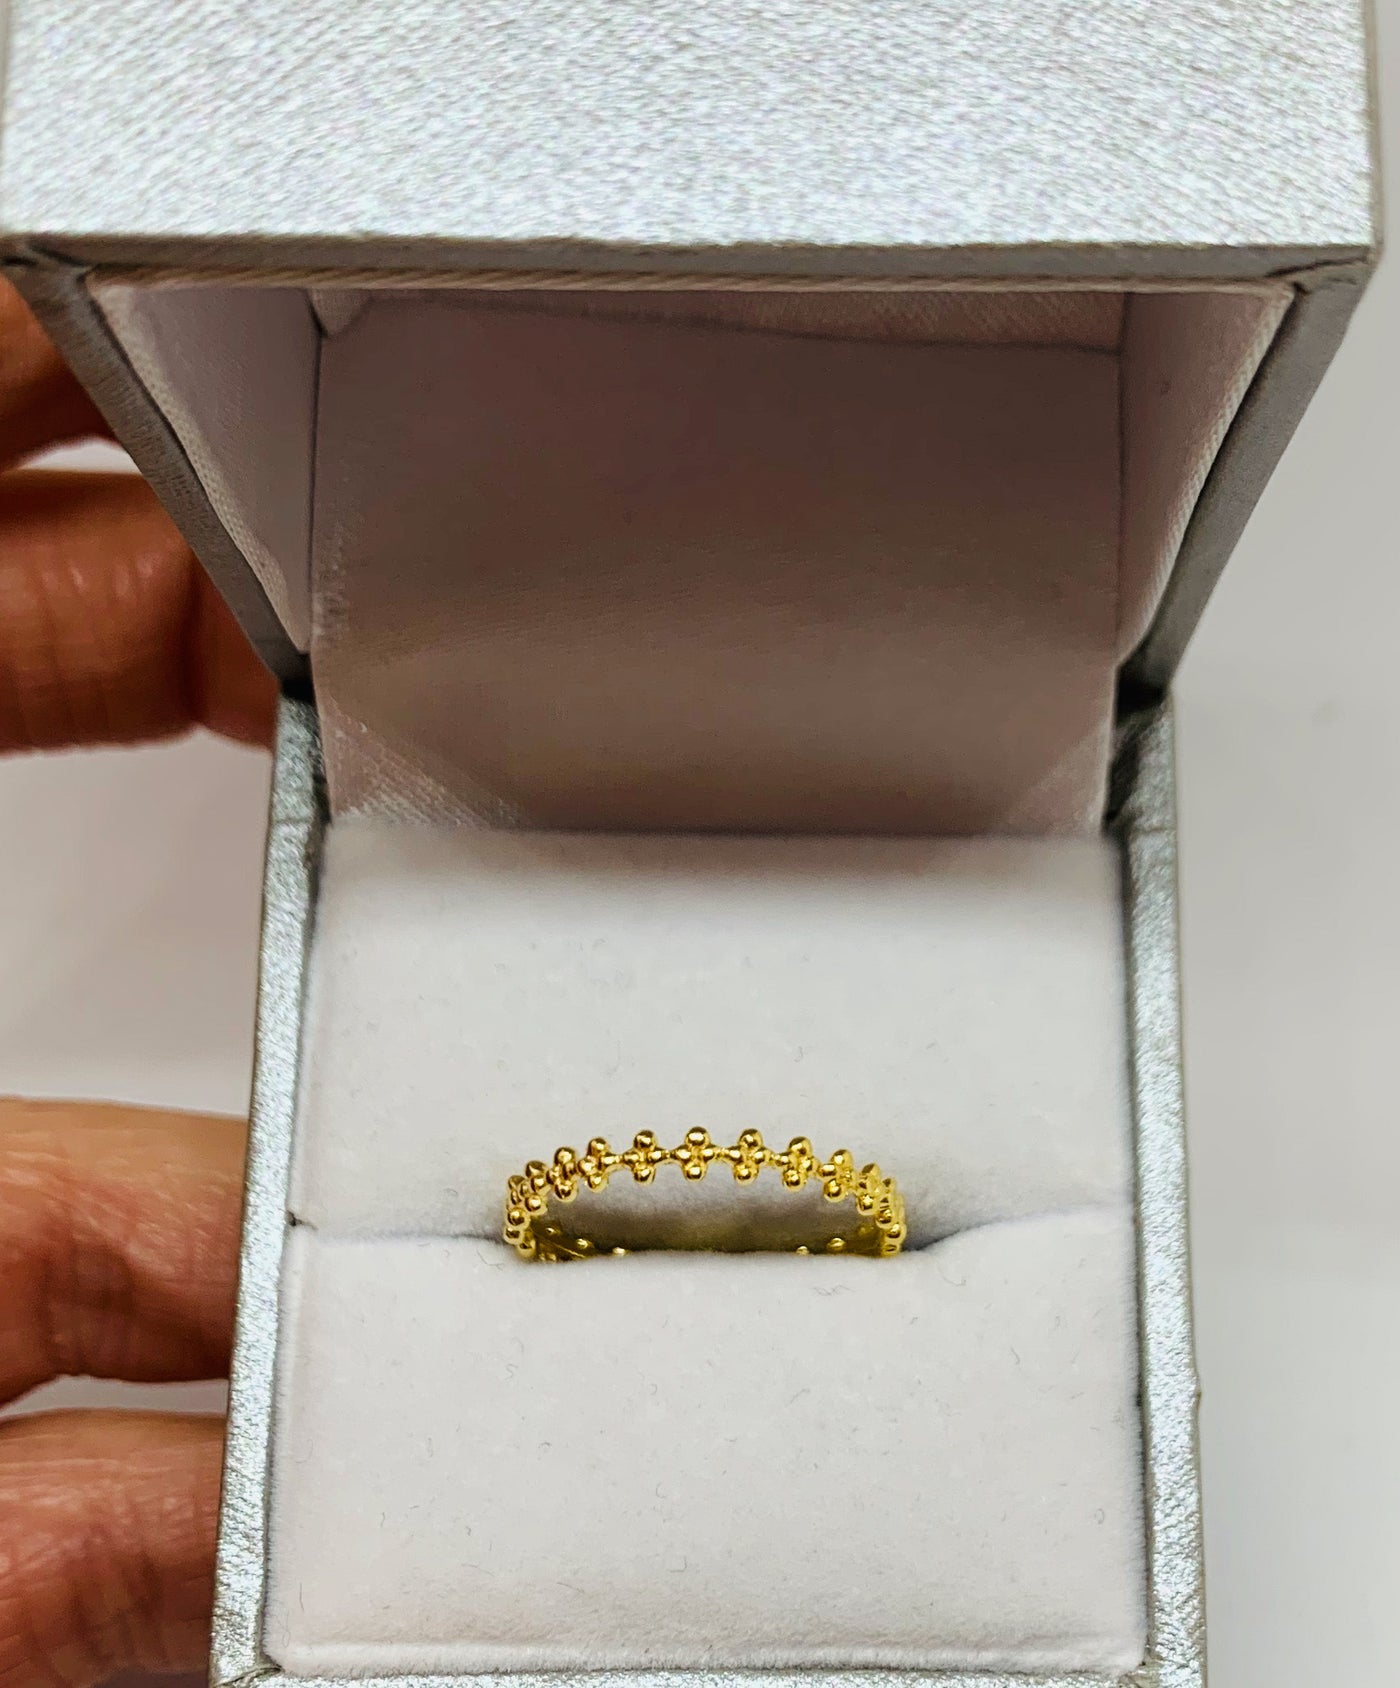 Gold Bobbled Flower Ring